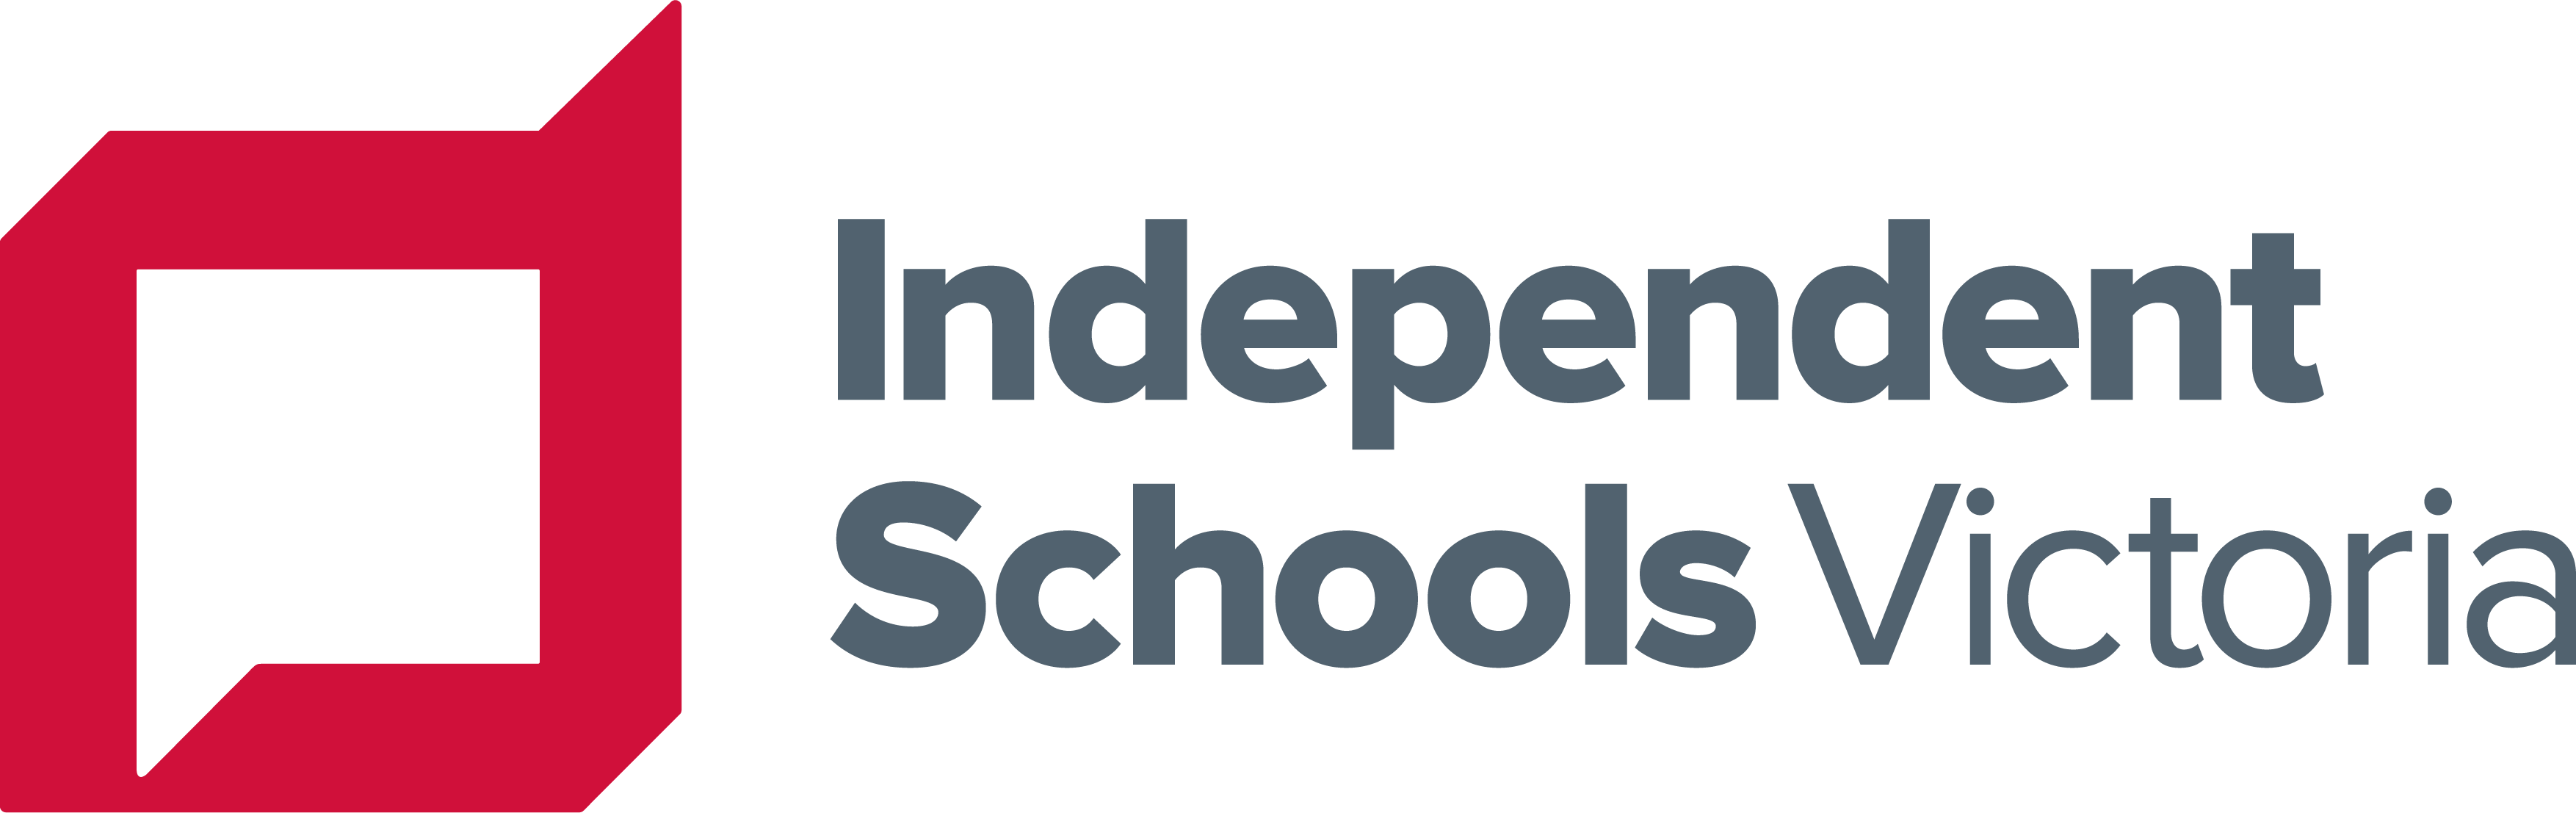 Independent Schools Victoria